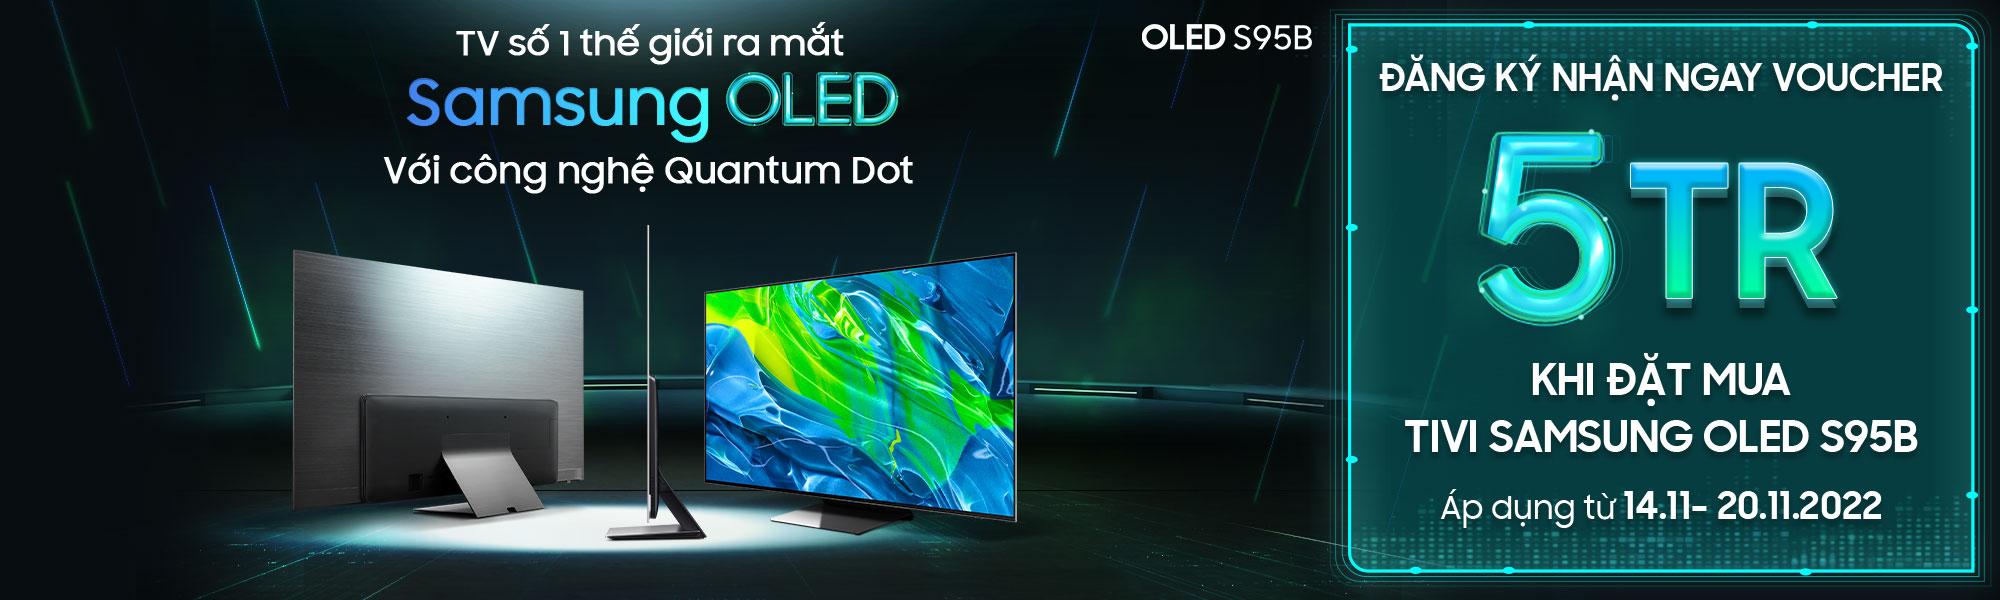 Đặt trước TV Samsung OLED đầu tiên tại Việt Nam, nhận ưu đãi lớn ...